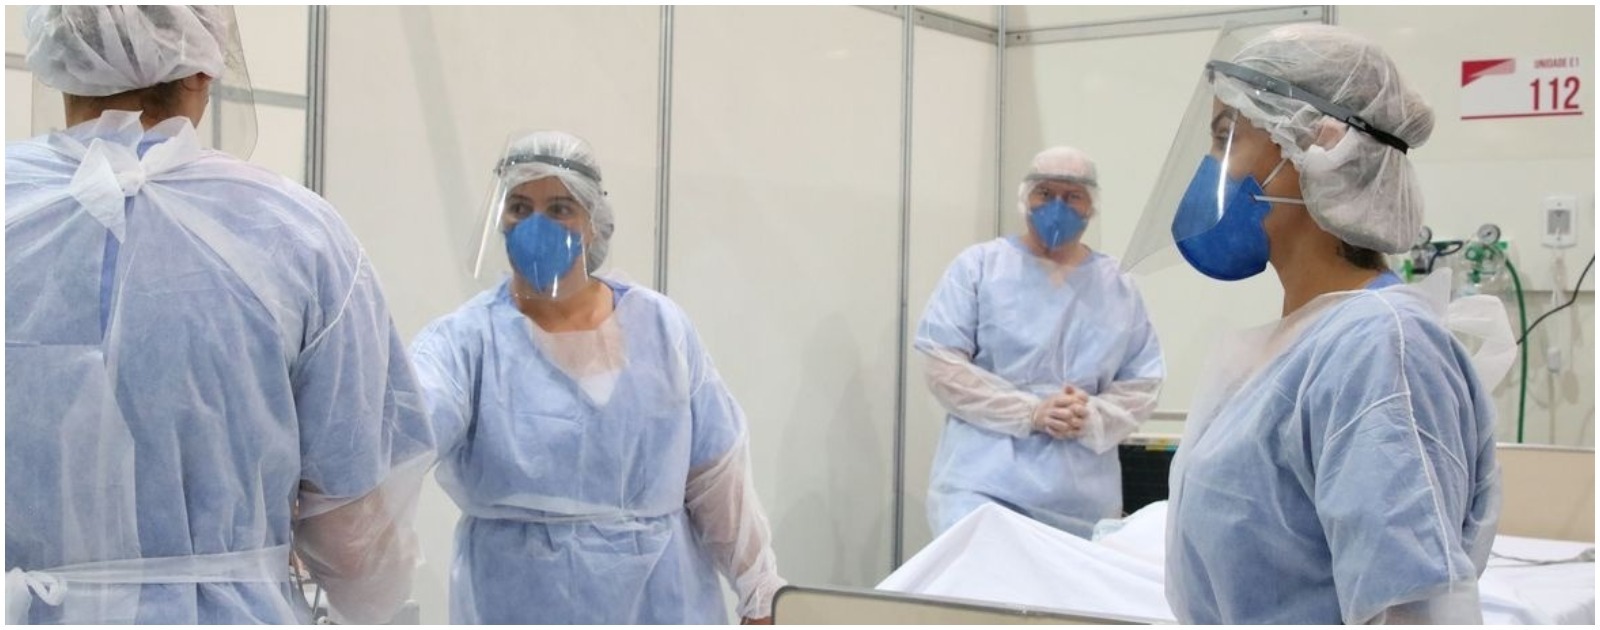 Enfermeiros e médicos com roupas de proteção contra a Covid-19